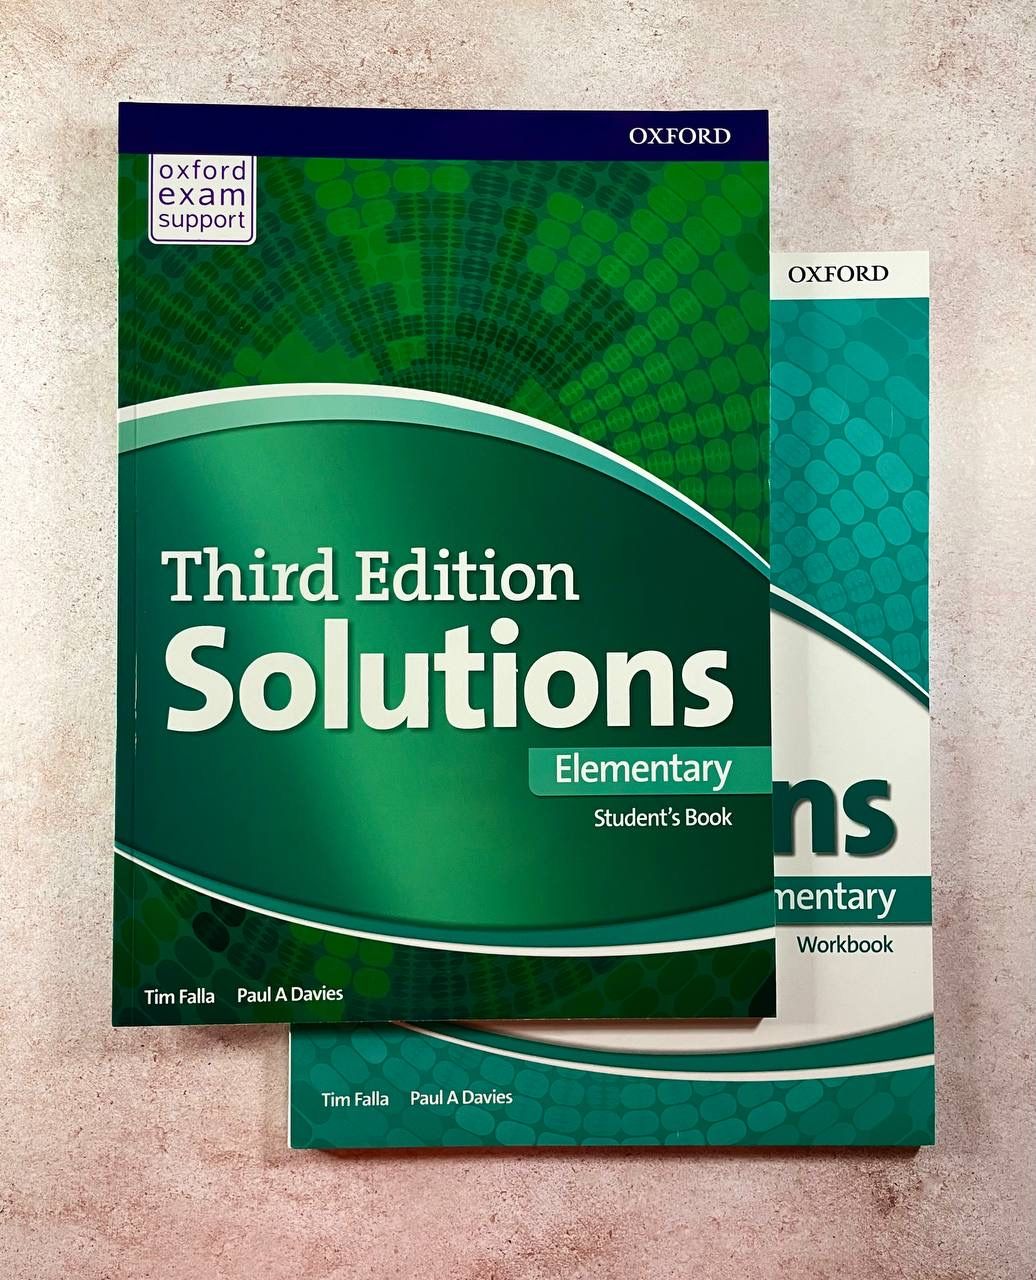 Solutions elementary 2. Учебник solutions Elementary. Учебники third Edition solutions Elementary Workbook. Solutions Elementary Workbook гдз. Solutions Elementary student's book.